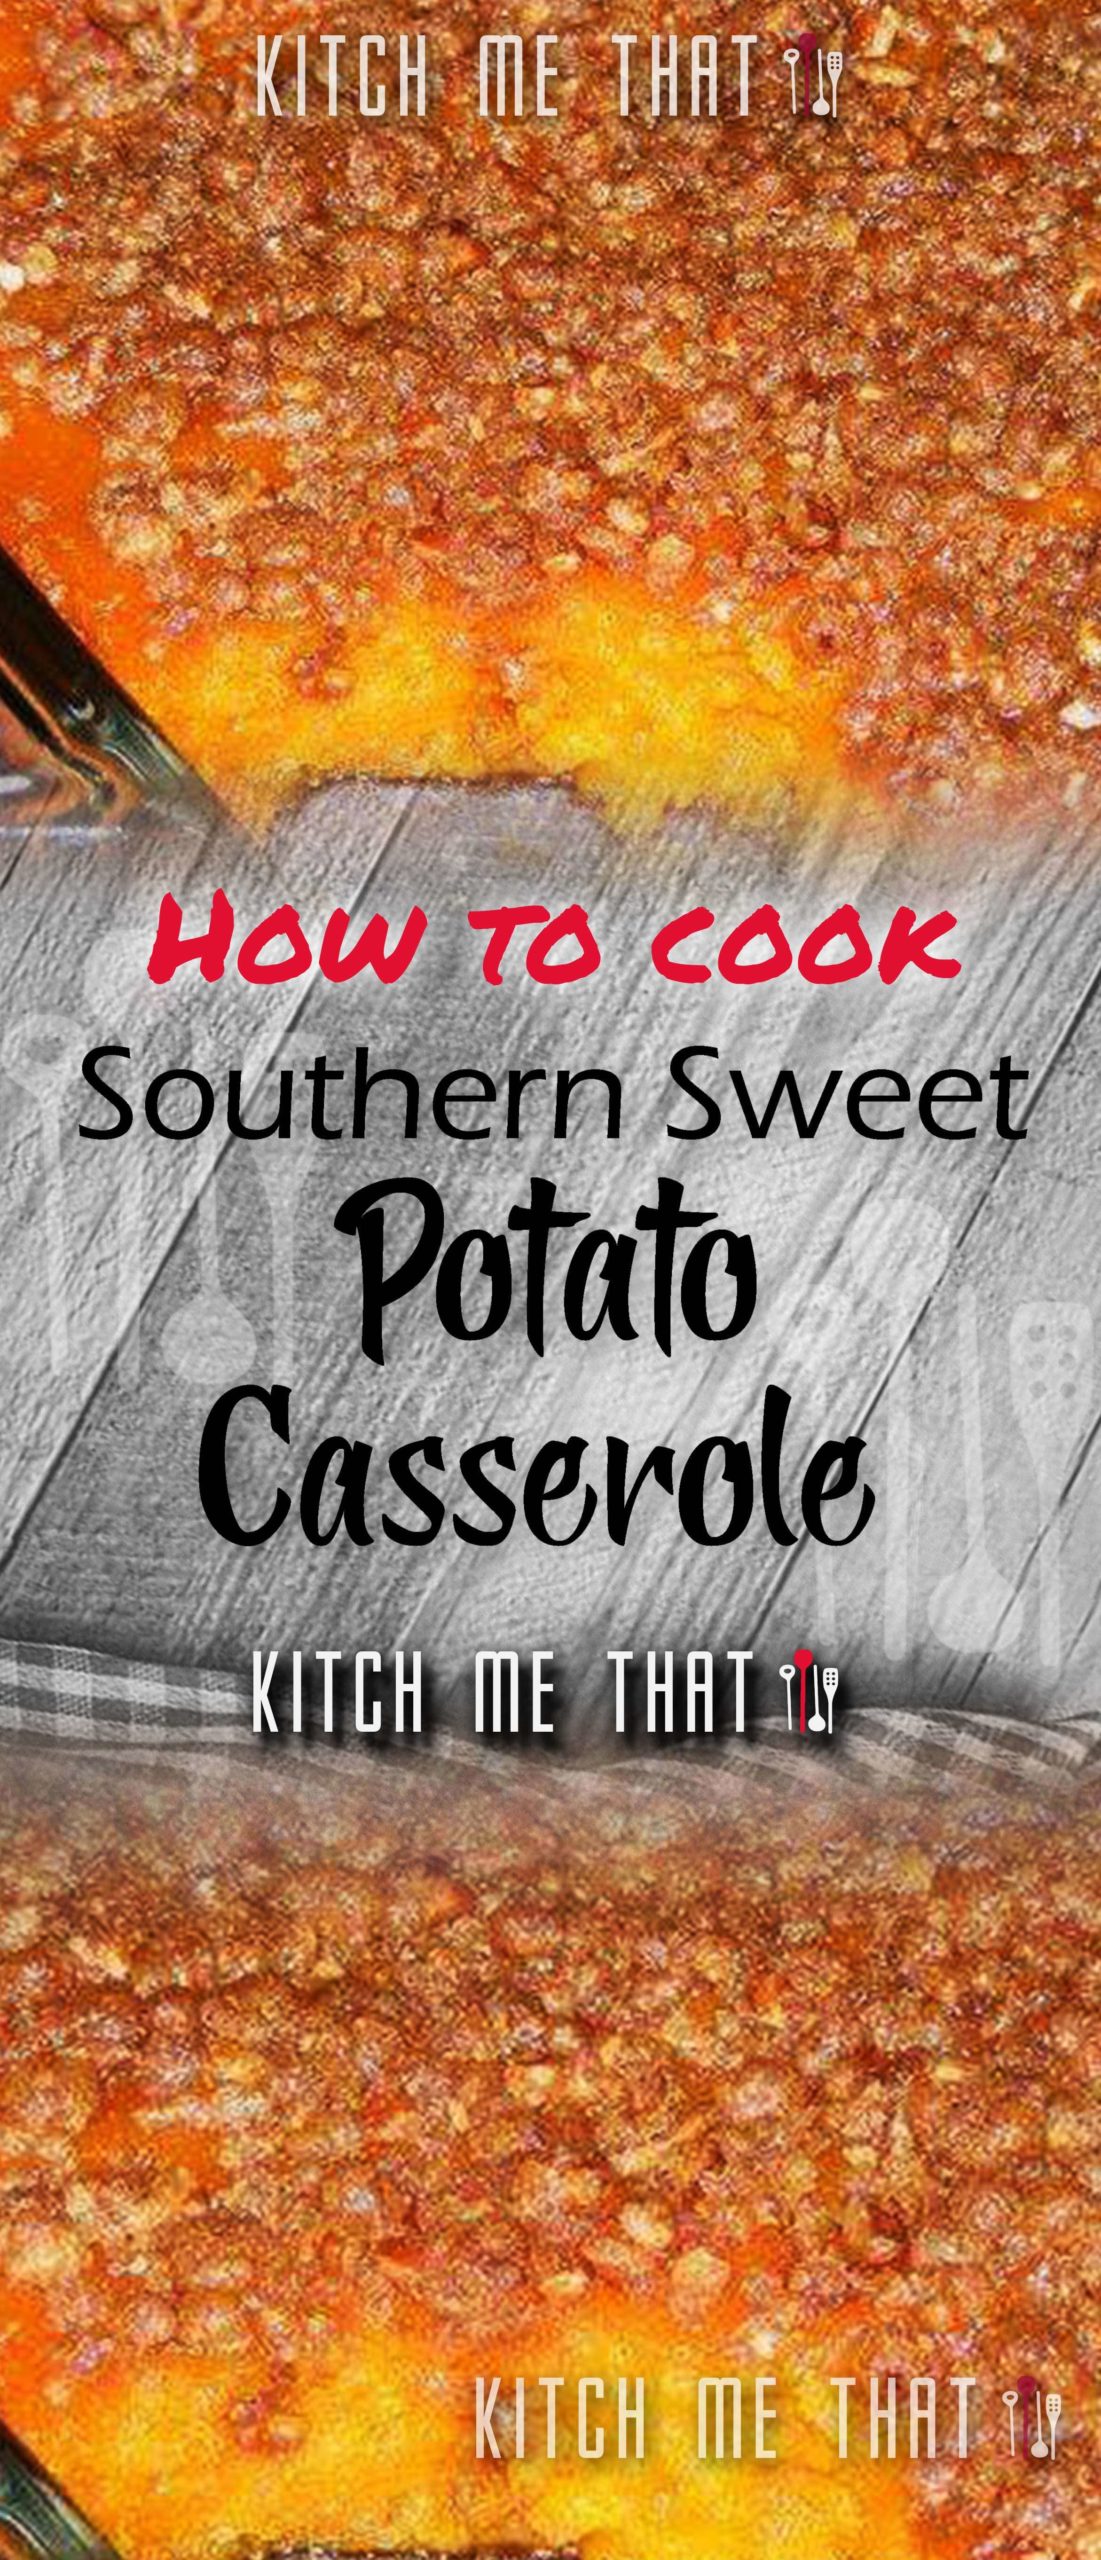 Southern Sweet Potato Casserole